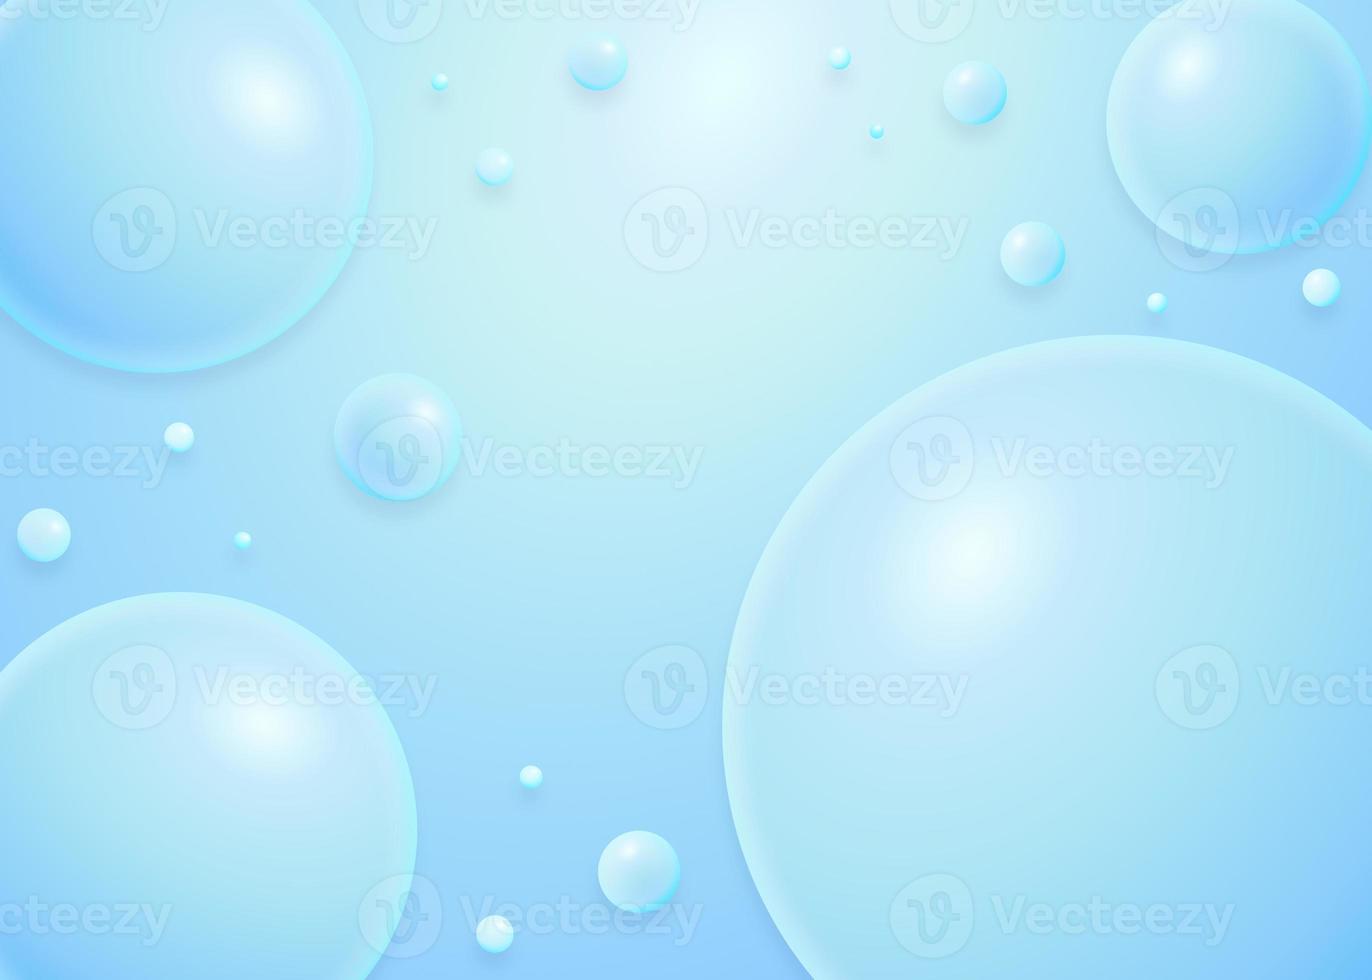 fundo bonito da esfera da bolha do céu azul foto